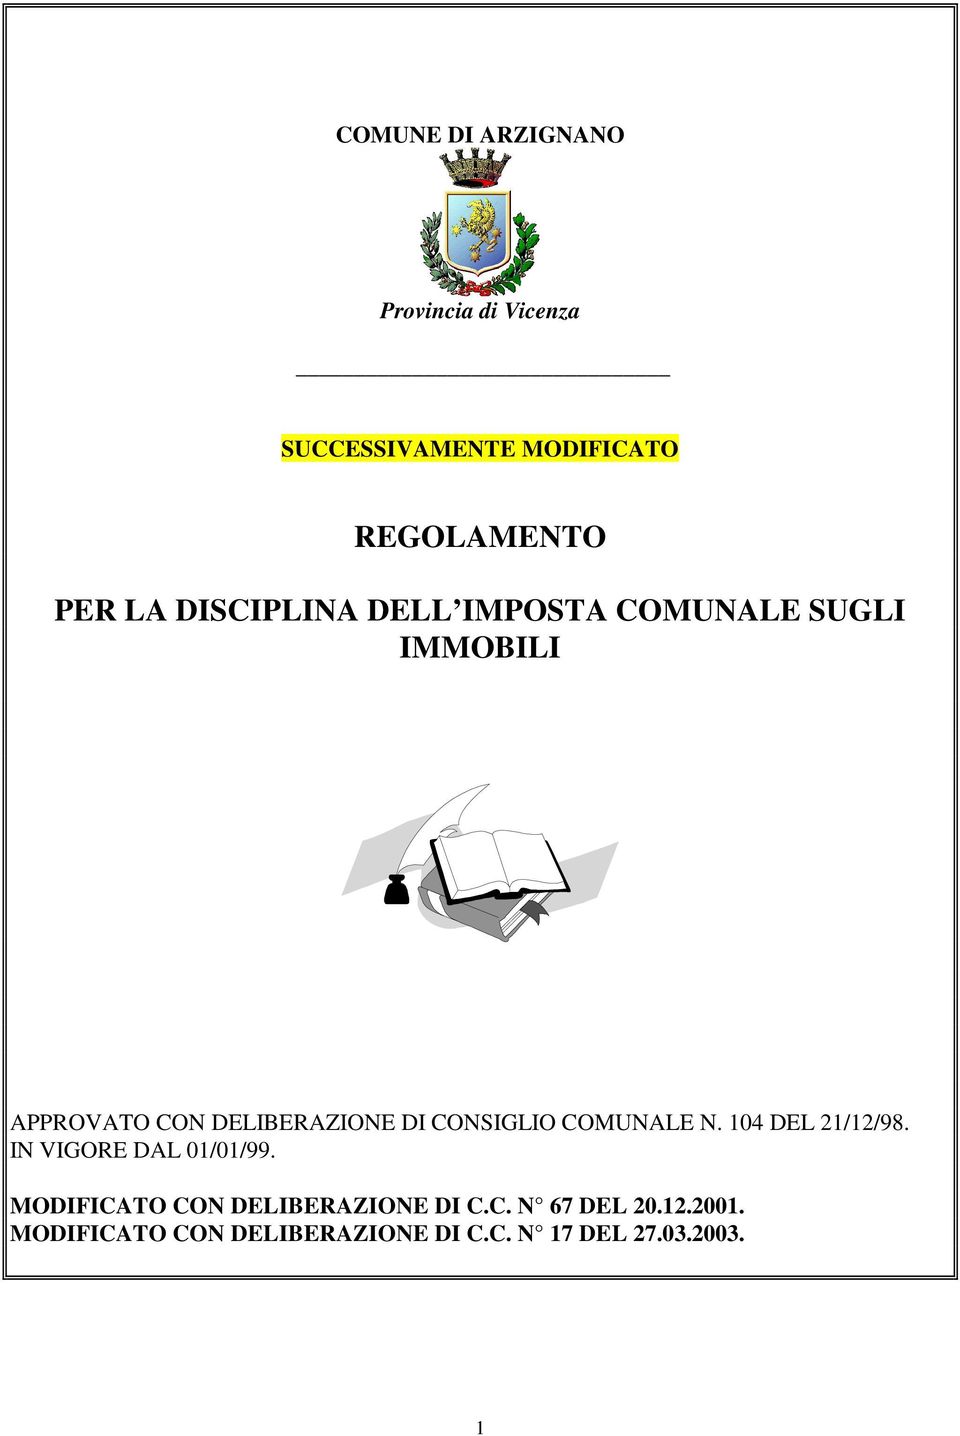 CONSIGLIO COMUNALE N. 104 DEL 21/12/98. IN VIGORE DAL 01/01/99.